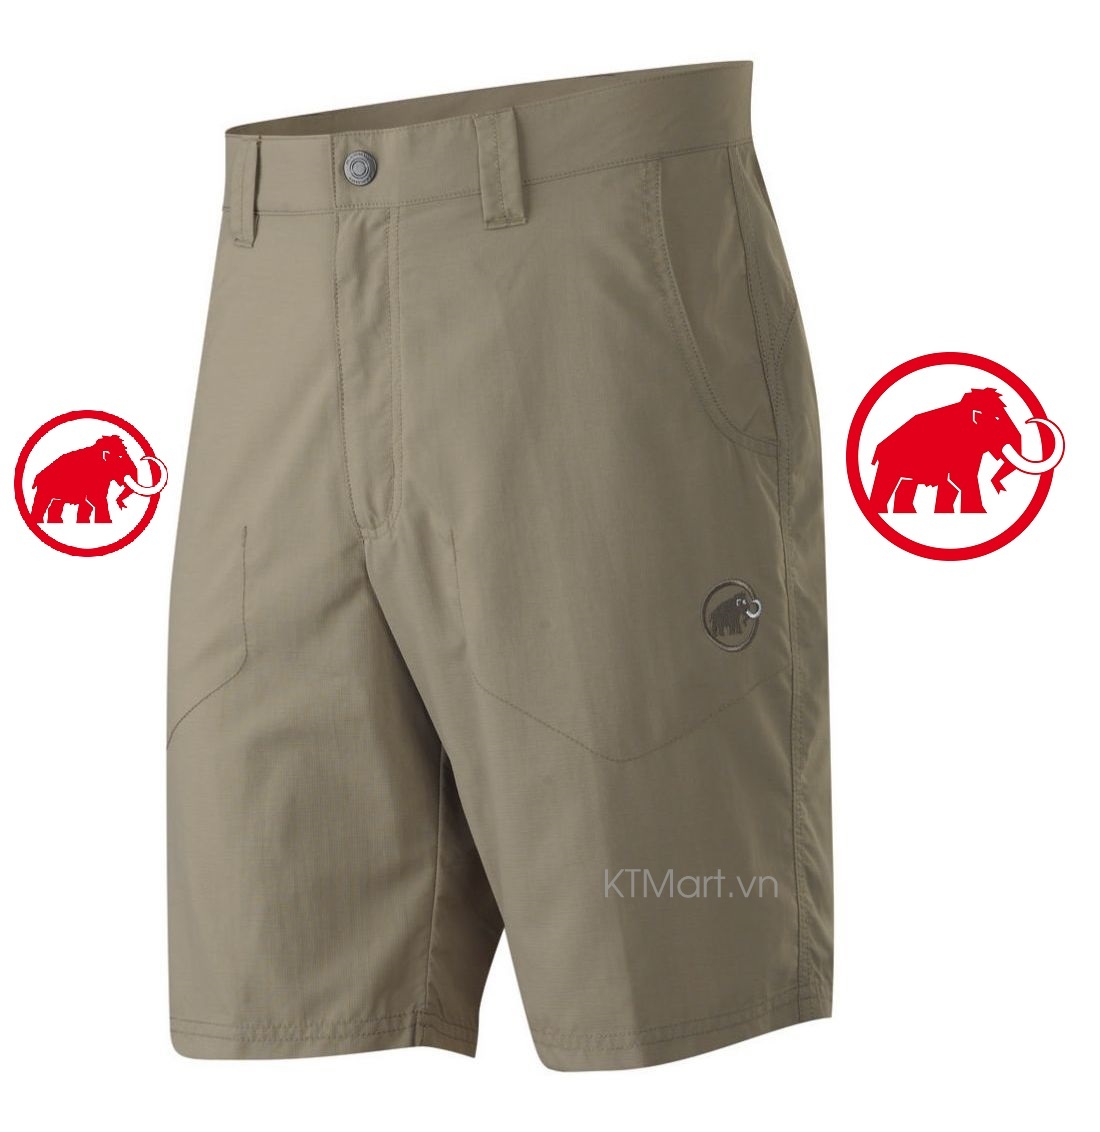 Mammut Crags Shorts 1020-05461 Mammut size 36